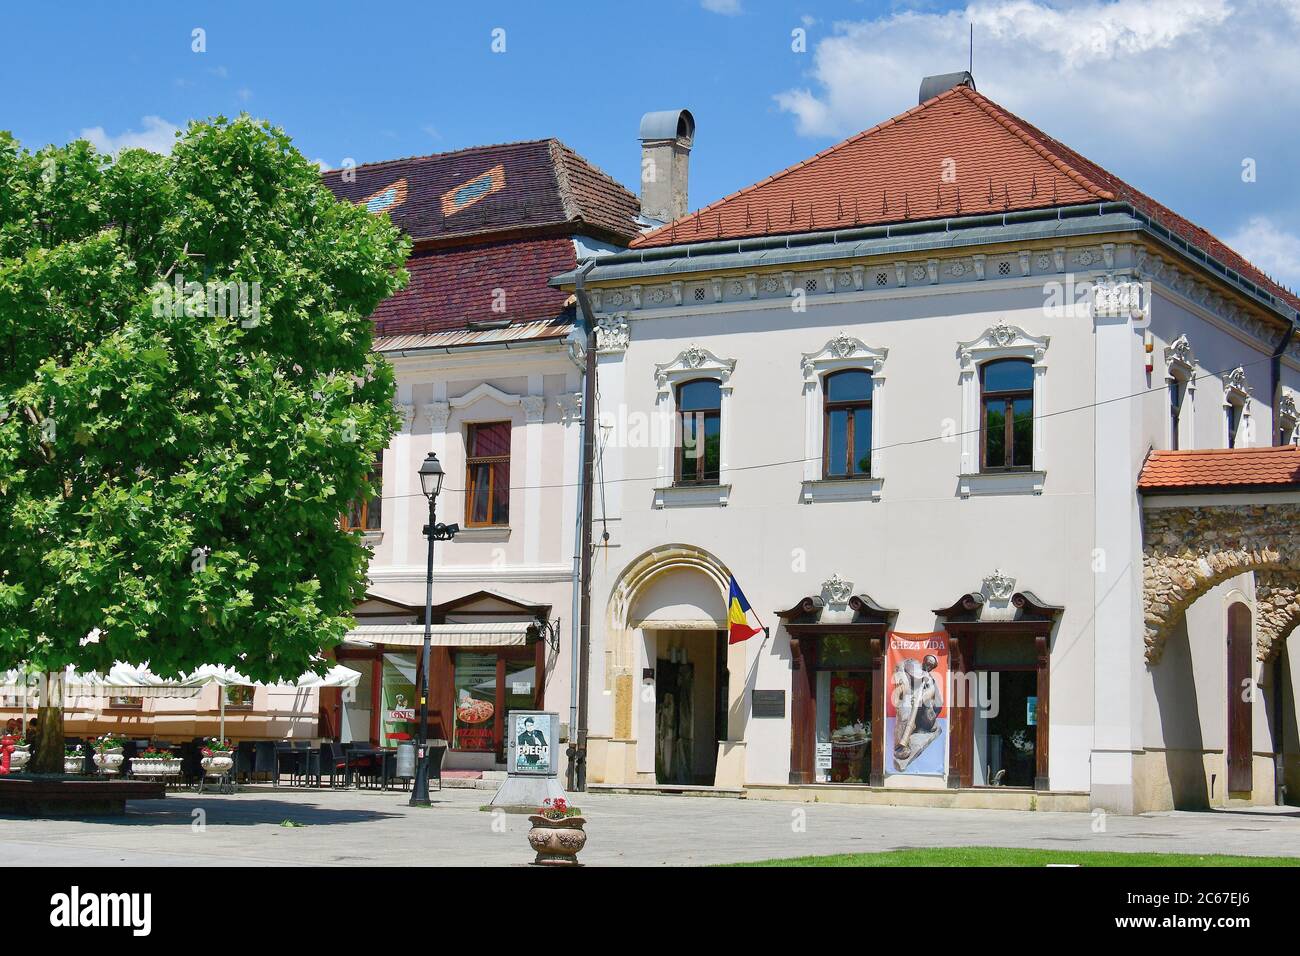 downtown, Baia Mare, Nagybánya, Maramures Region, Romania Stock Photo